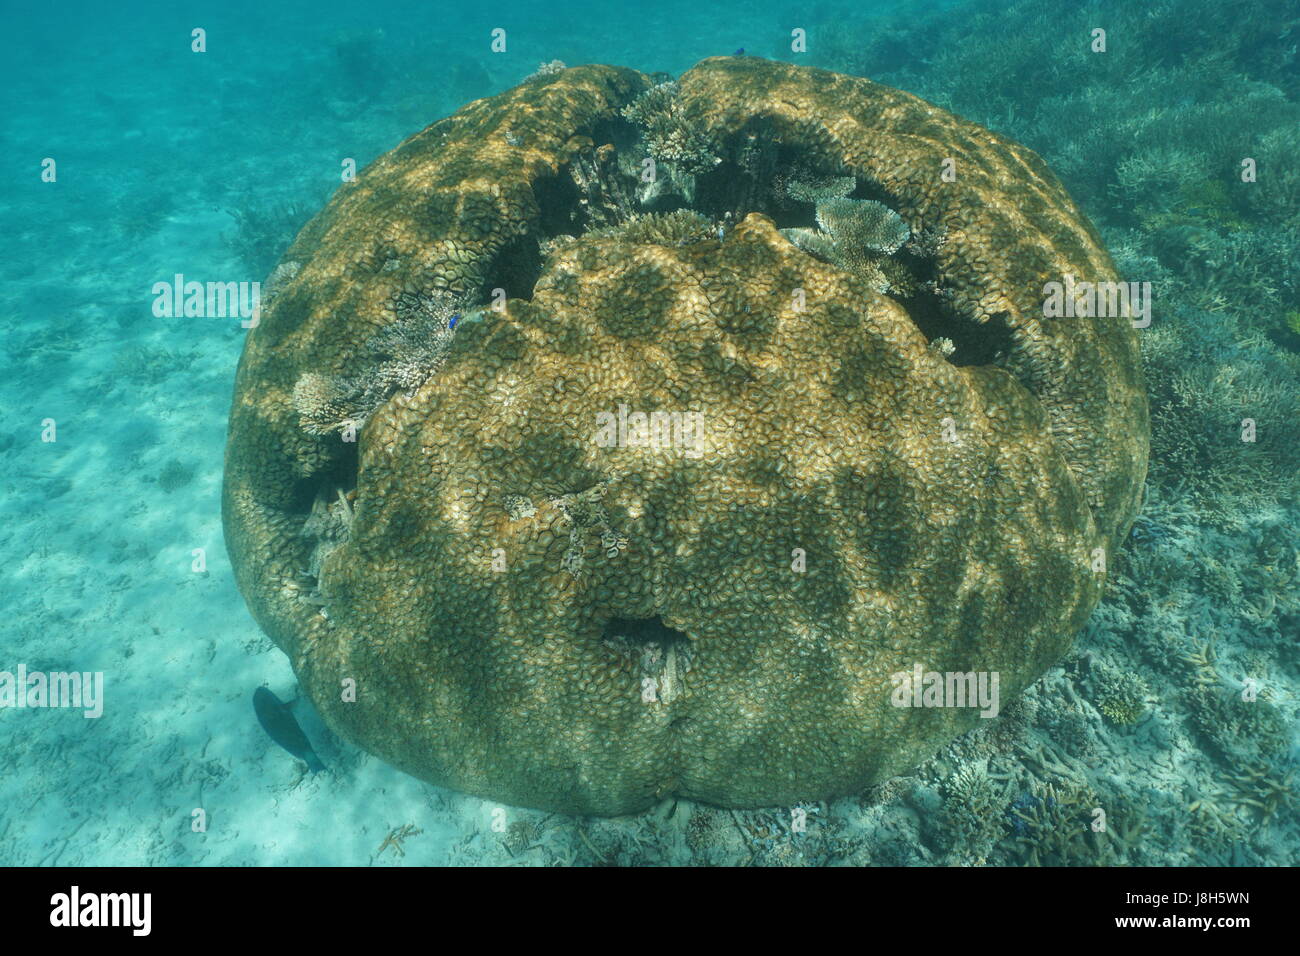 Massiccio corallo emisferica subacquea cervello lobata corallo, Lobophyllia hemprichii, oceano pacifico del sud, Nuova Caledonia, Oceania Foto Stock